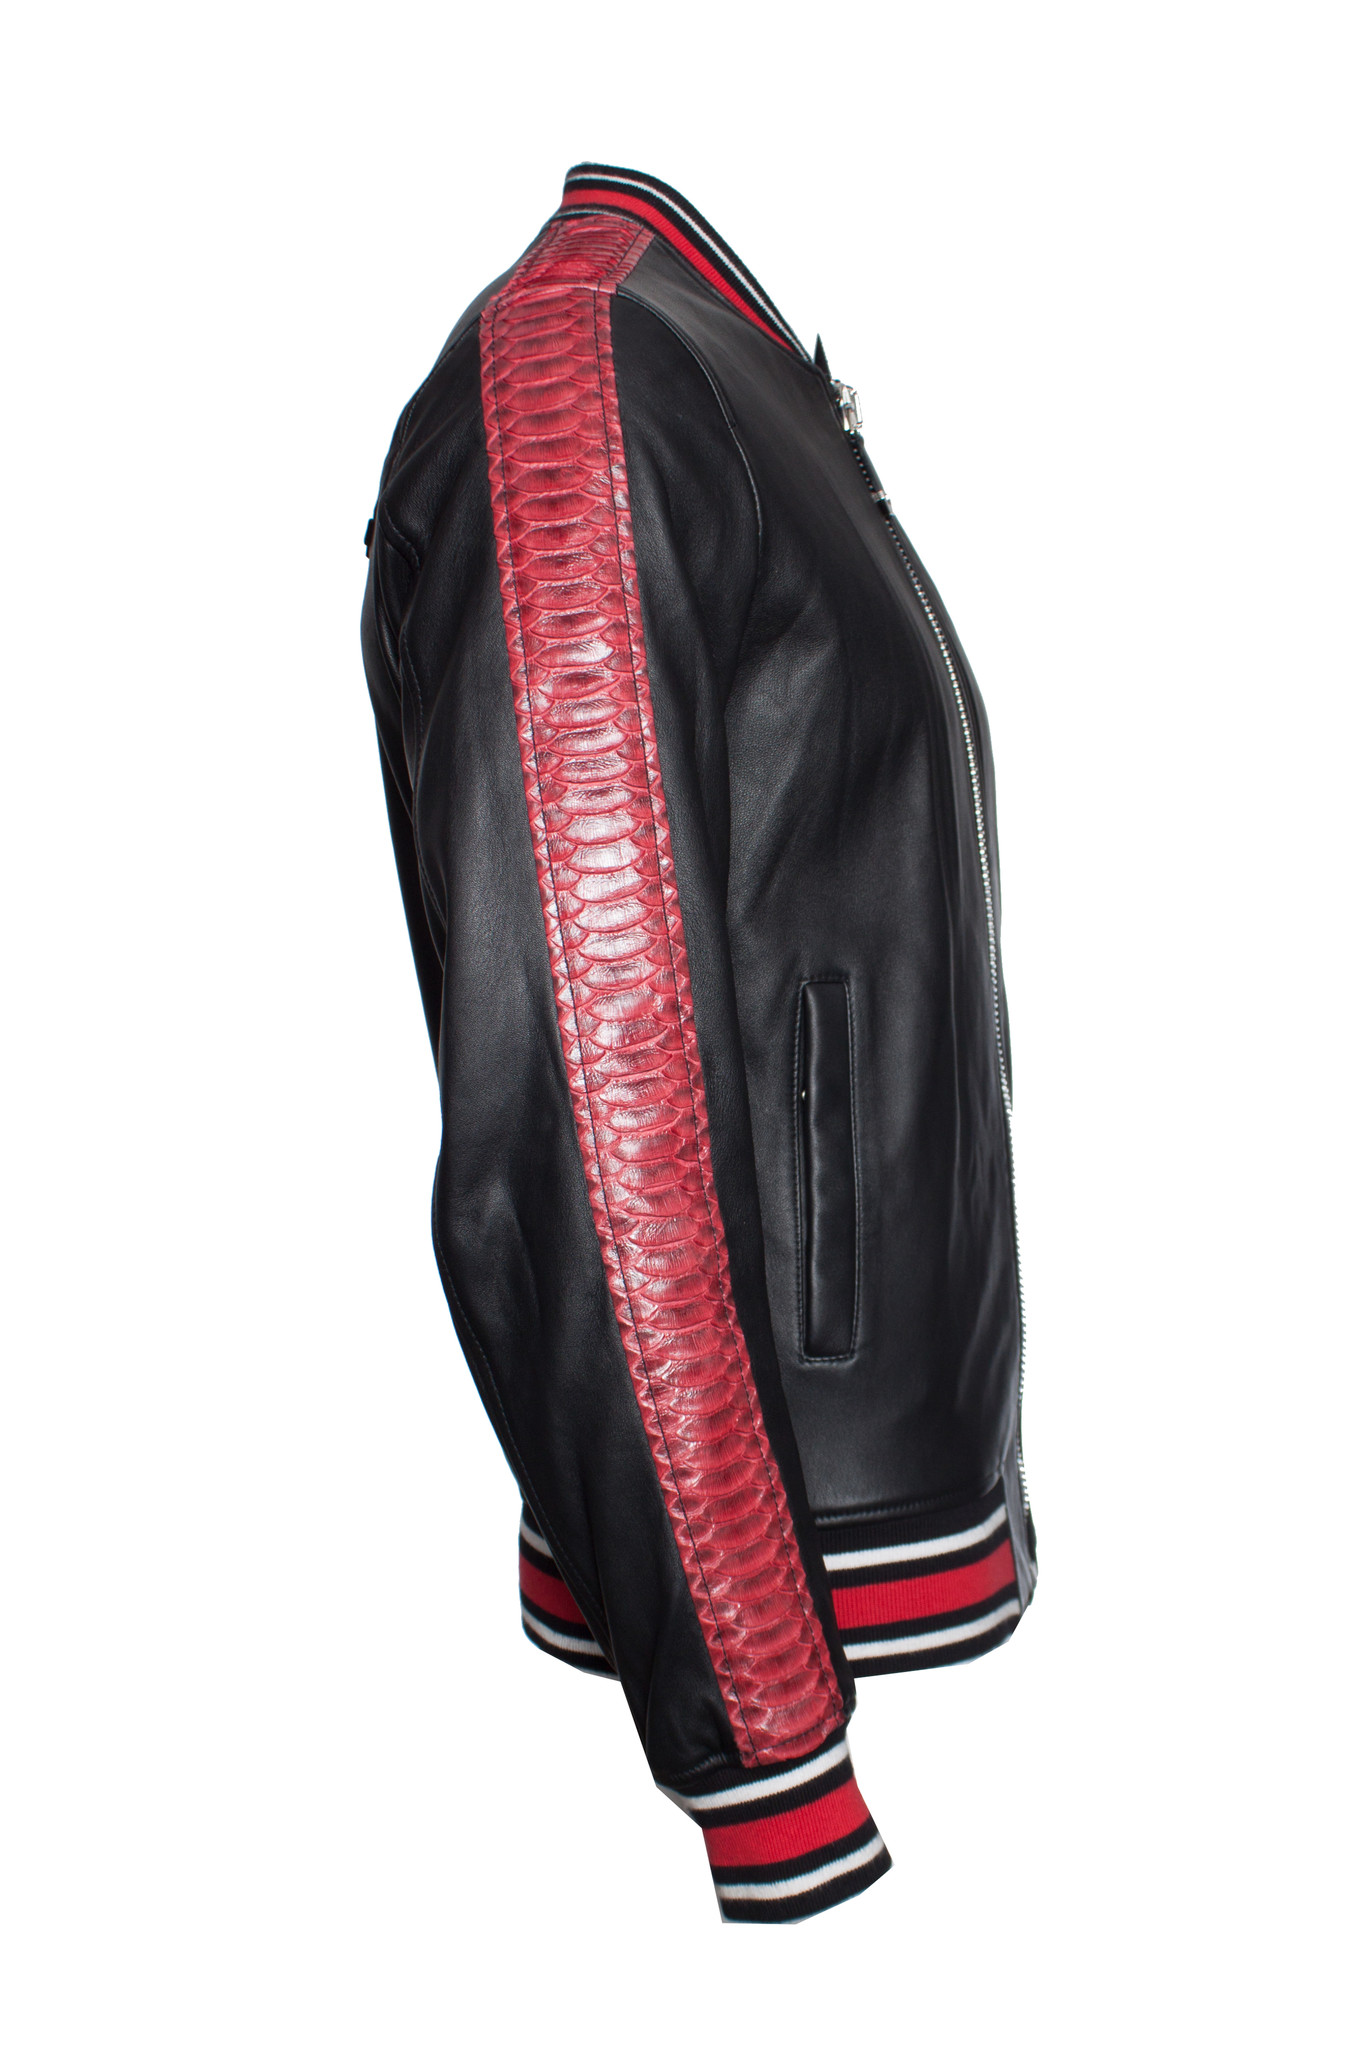 Philipp Plein, Black leather “Reginald” Bomber jacket - Unique Designer ...